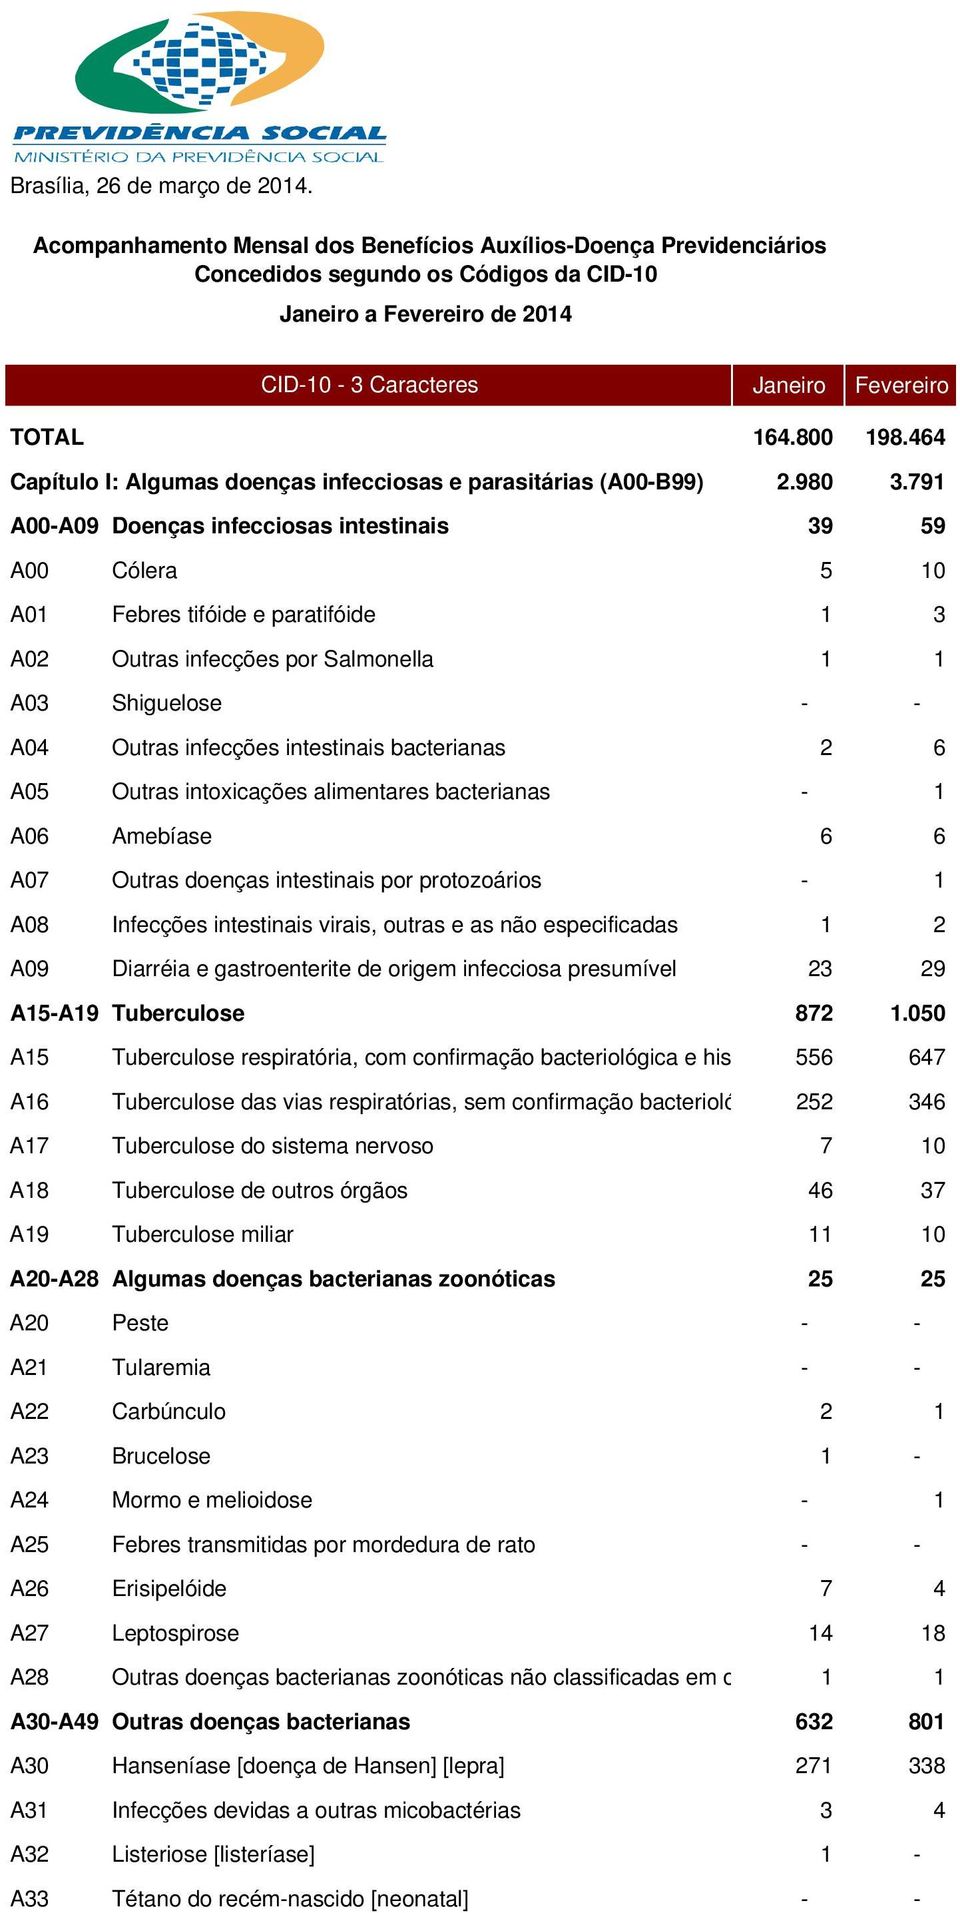 464 Capítulo I: Algumas doenças infecciosas e parasitárias (A00-B99) 2.980 3.